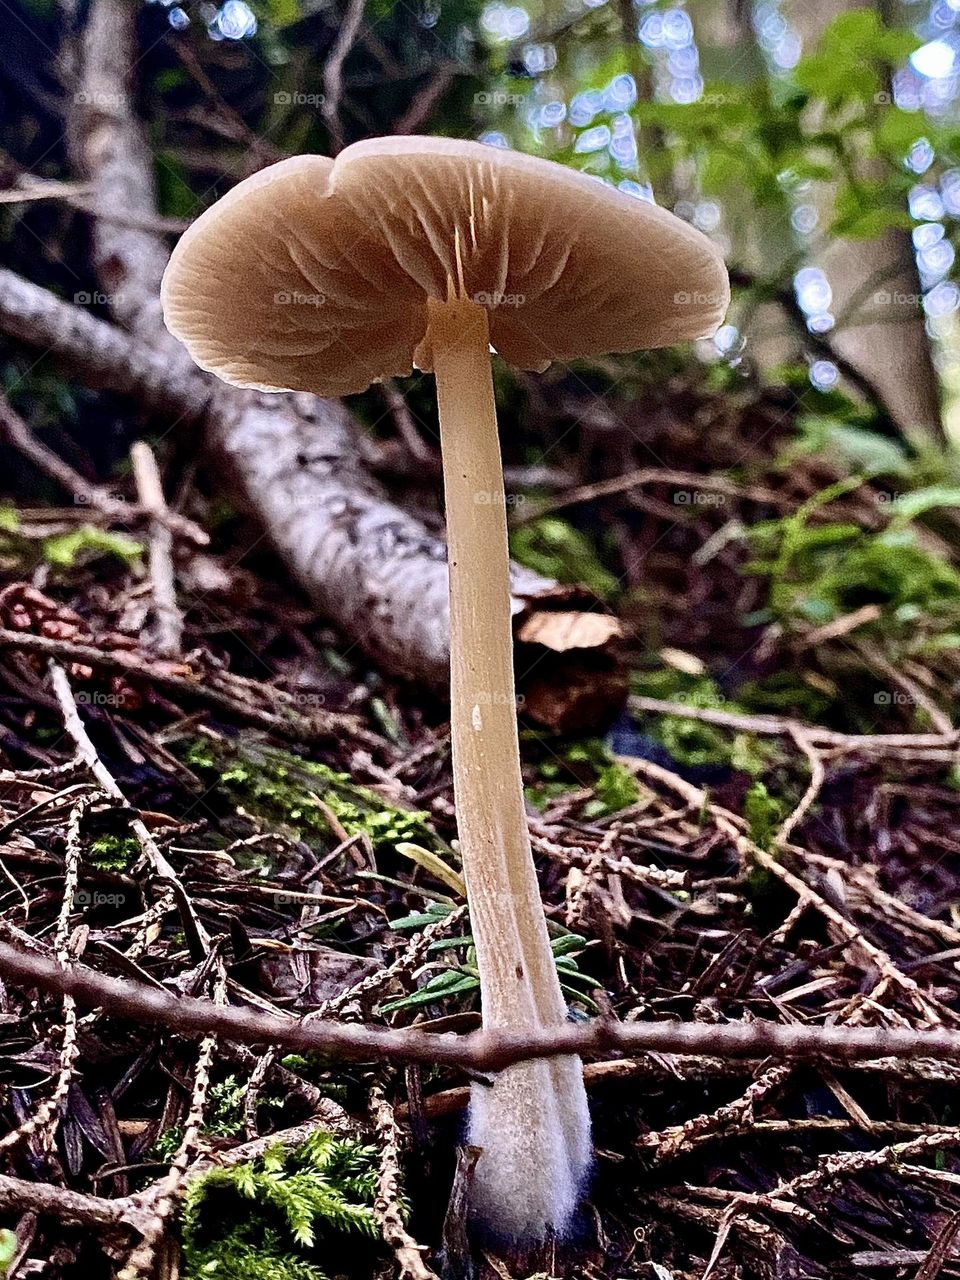 Mushroom underneath 